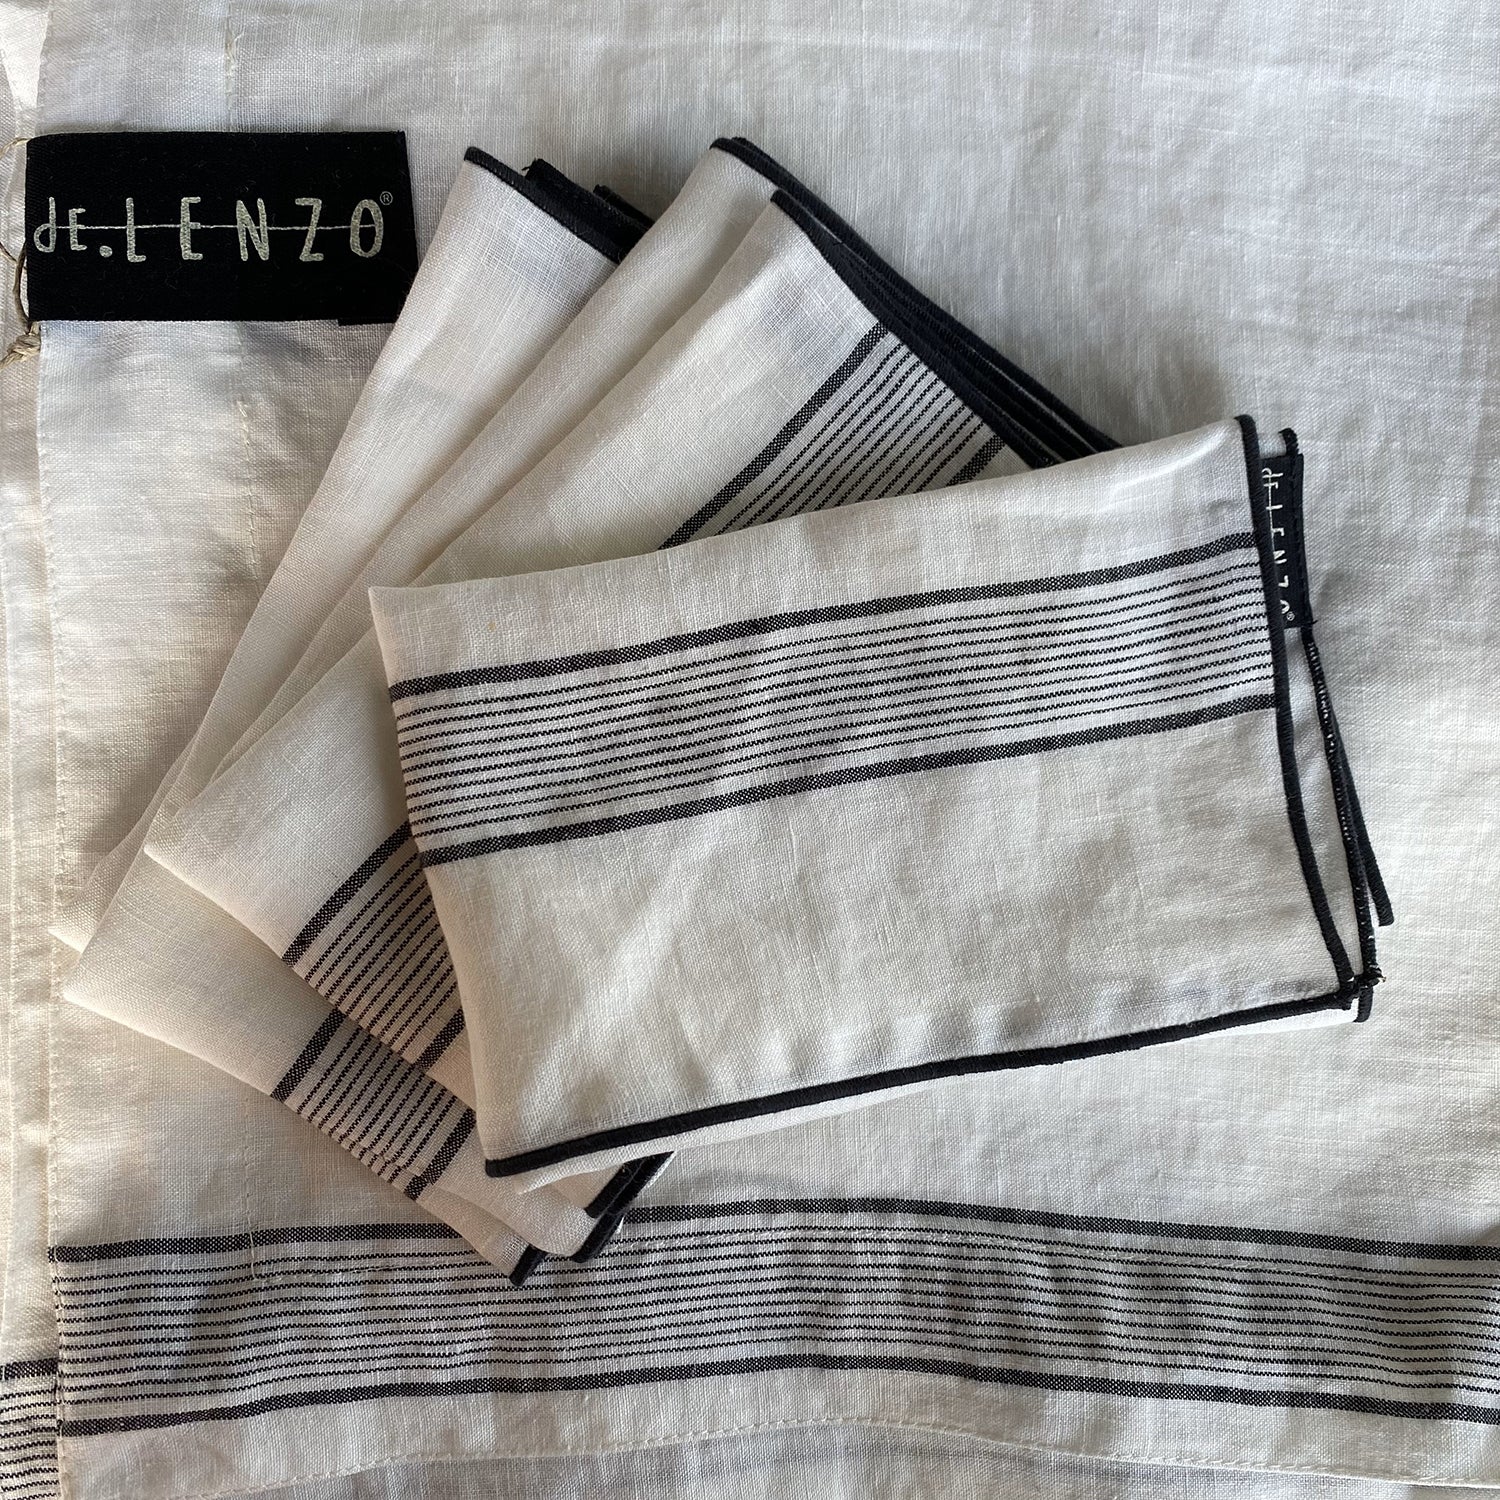 Servilletas de mantel de lino blanco con rayas finas de color negro.